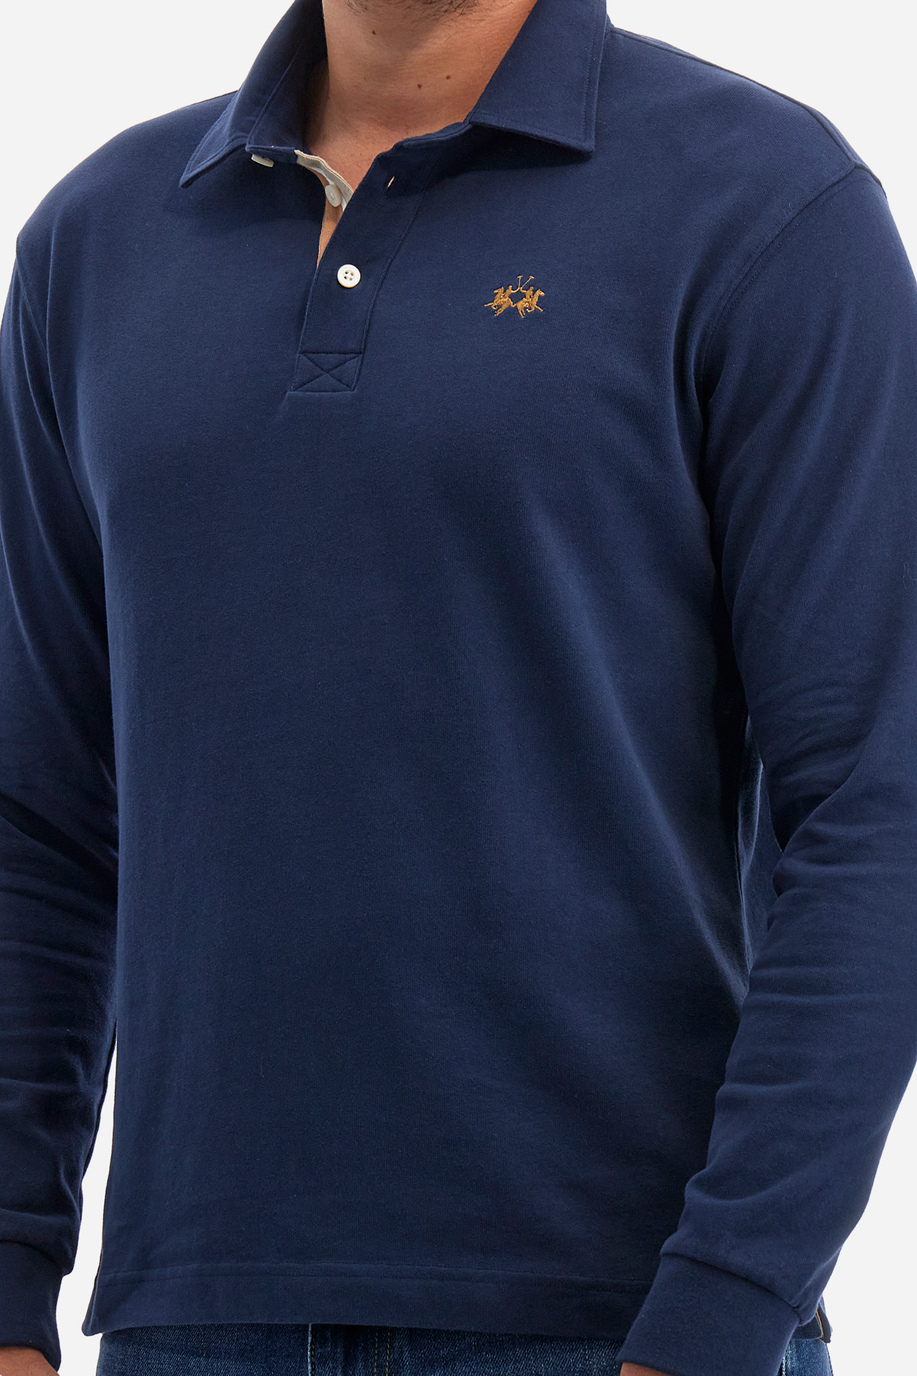 Herren -Poloshirt regular fit - Waller - Aussergewöhnliche Geschenke für ihn | La Martina - Official Online Shop